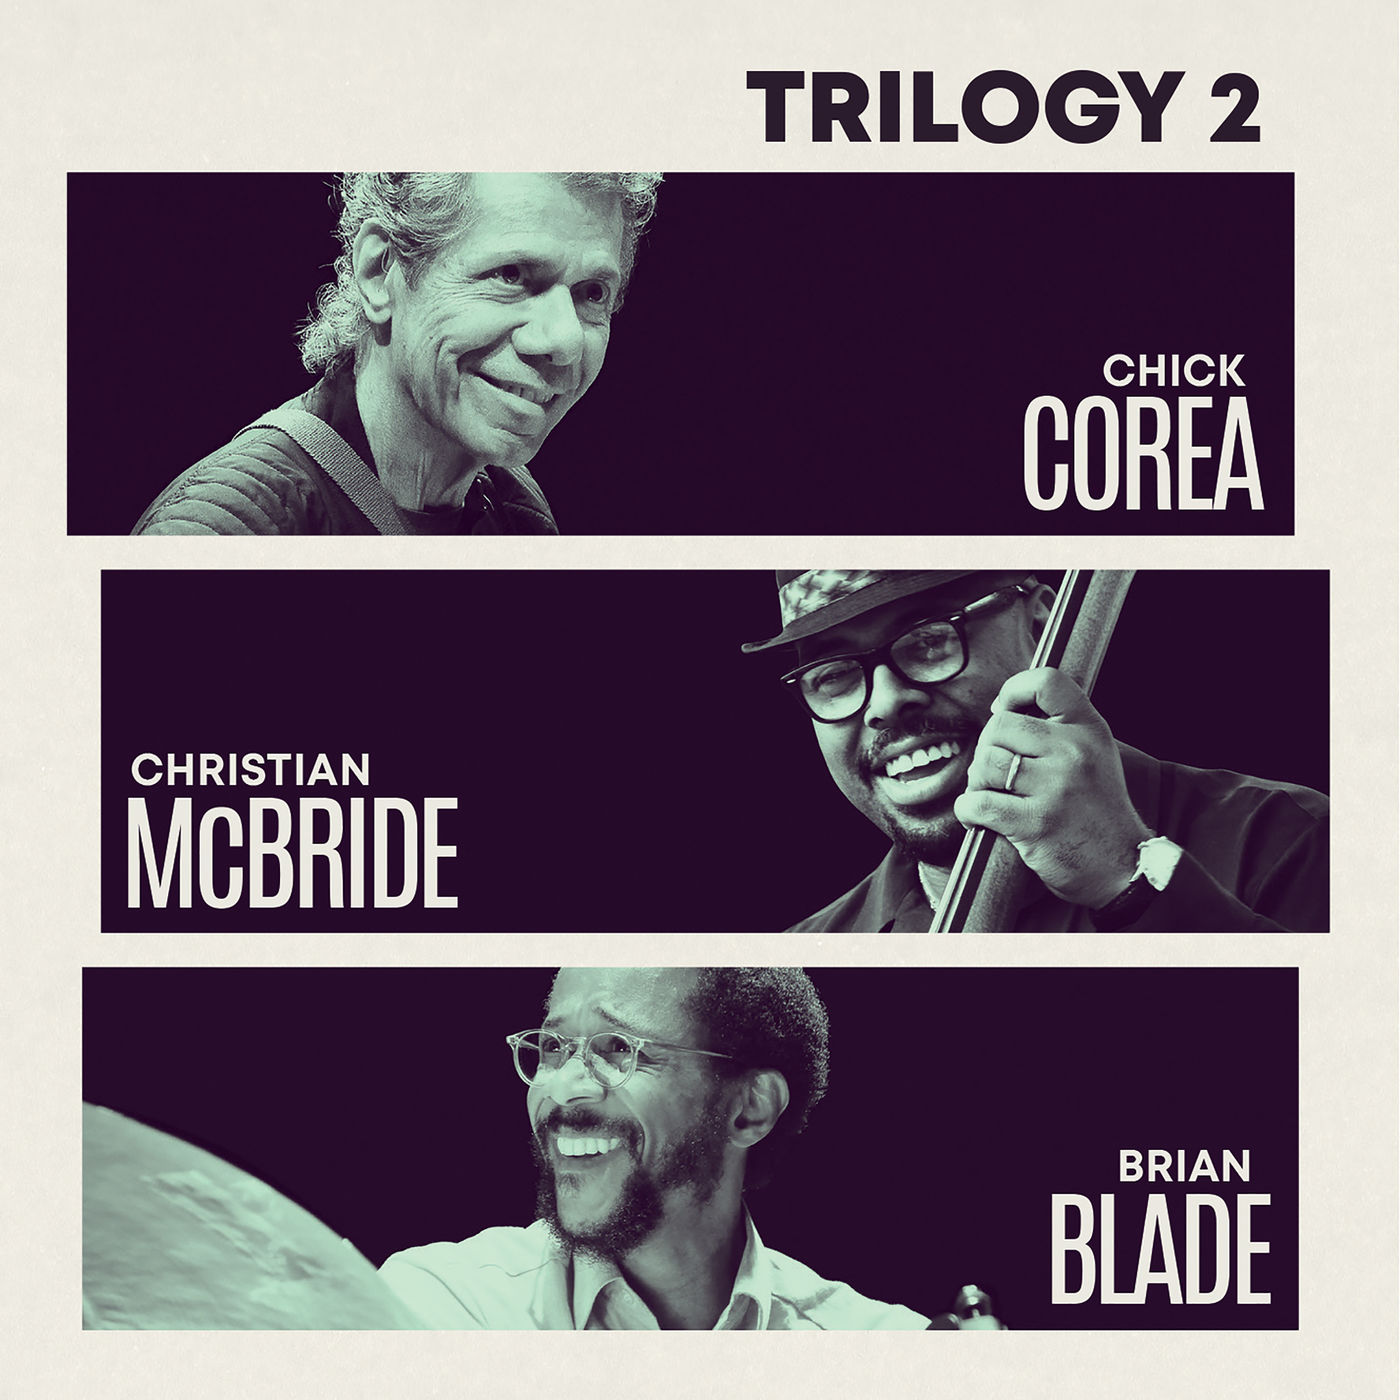 Chick Corea, Christian McBride, Brian Blade - Trilogy 2 (2019) [FLAC 24bit/192kHz]